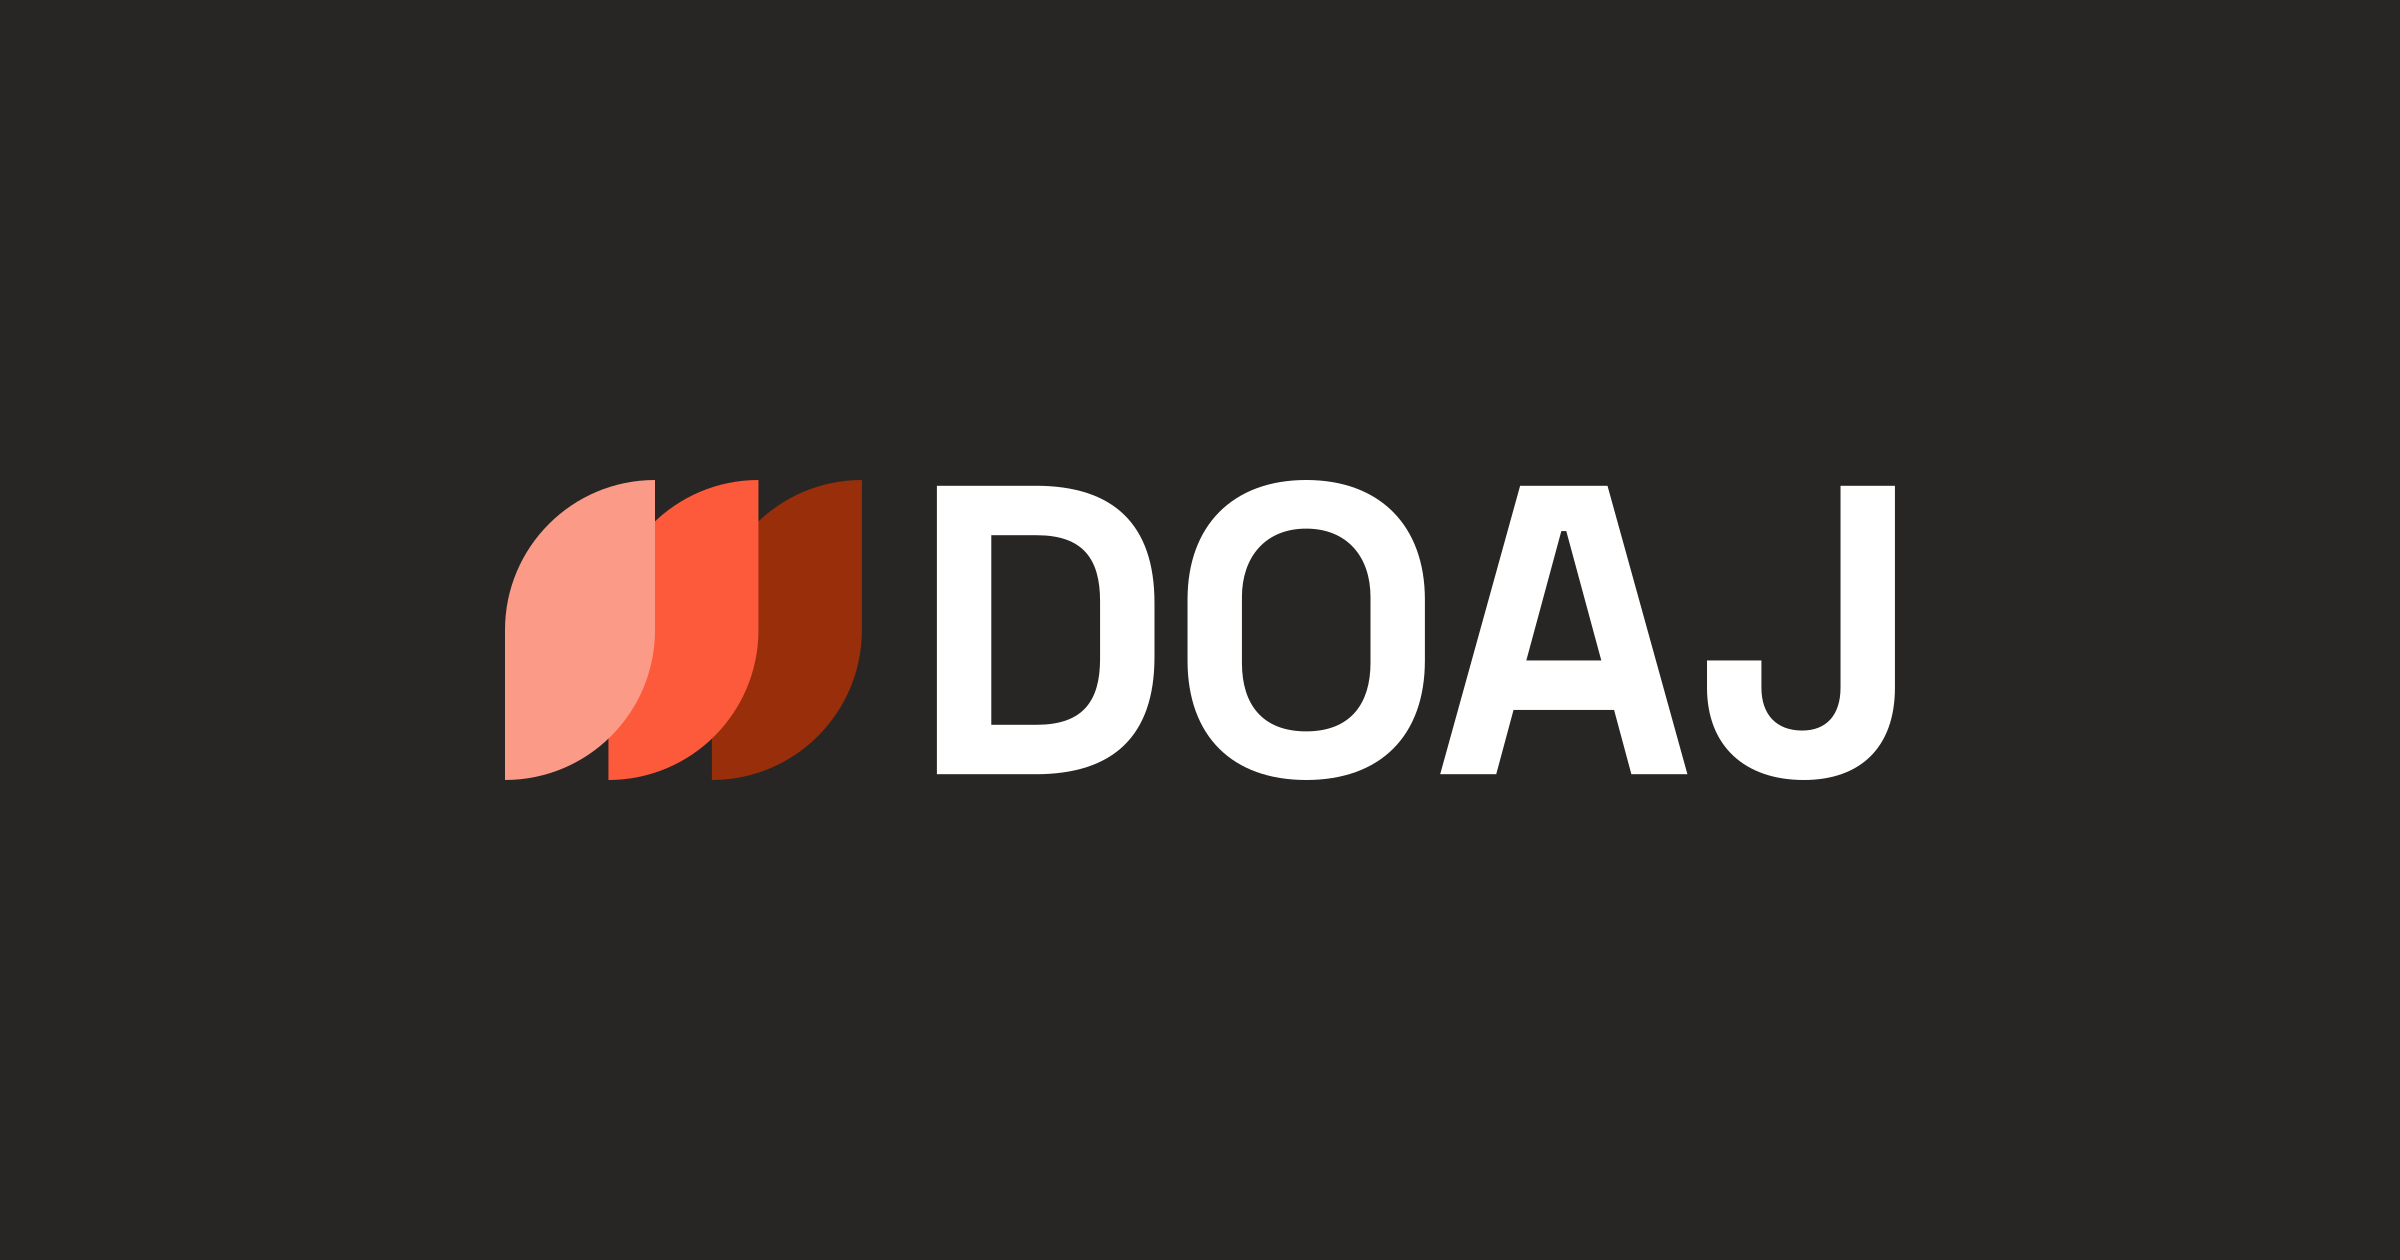 doaj.org